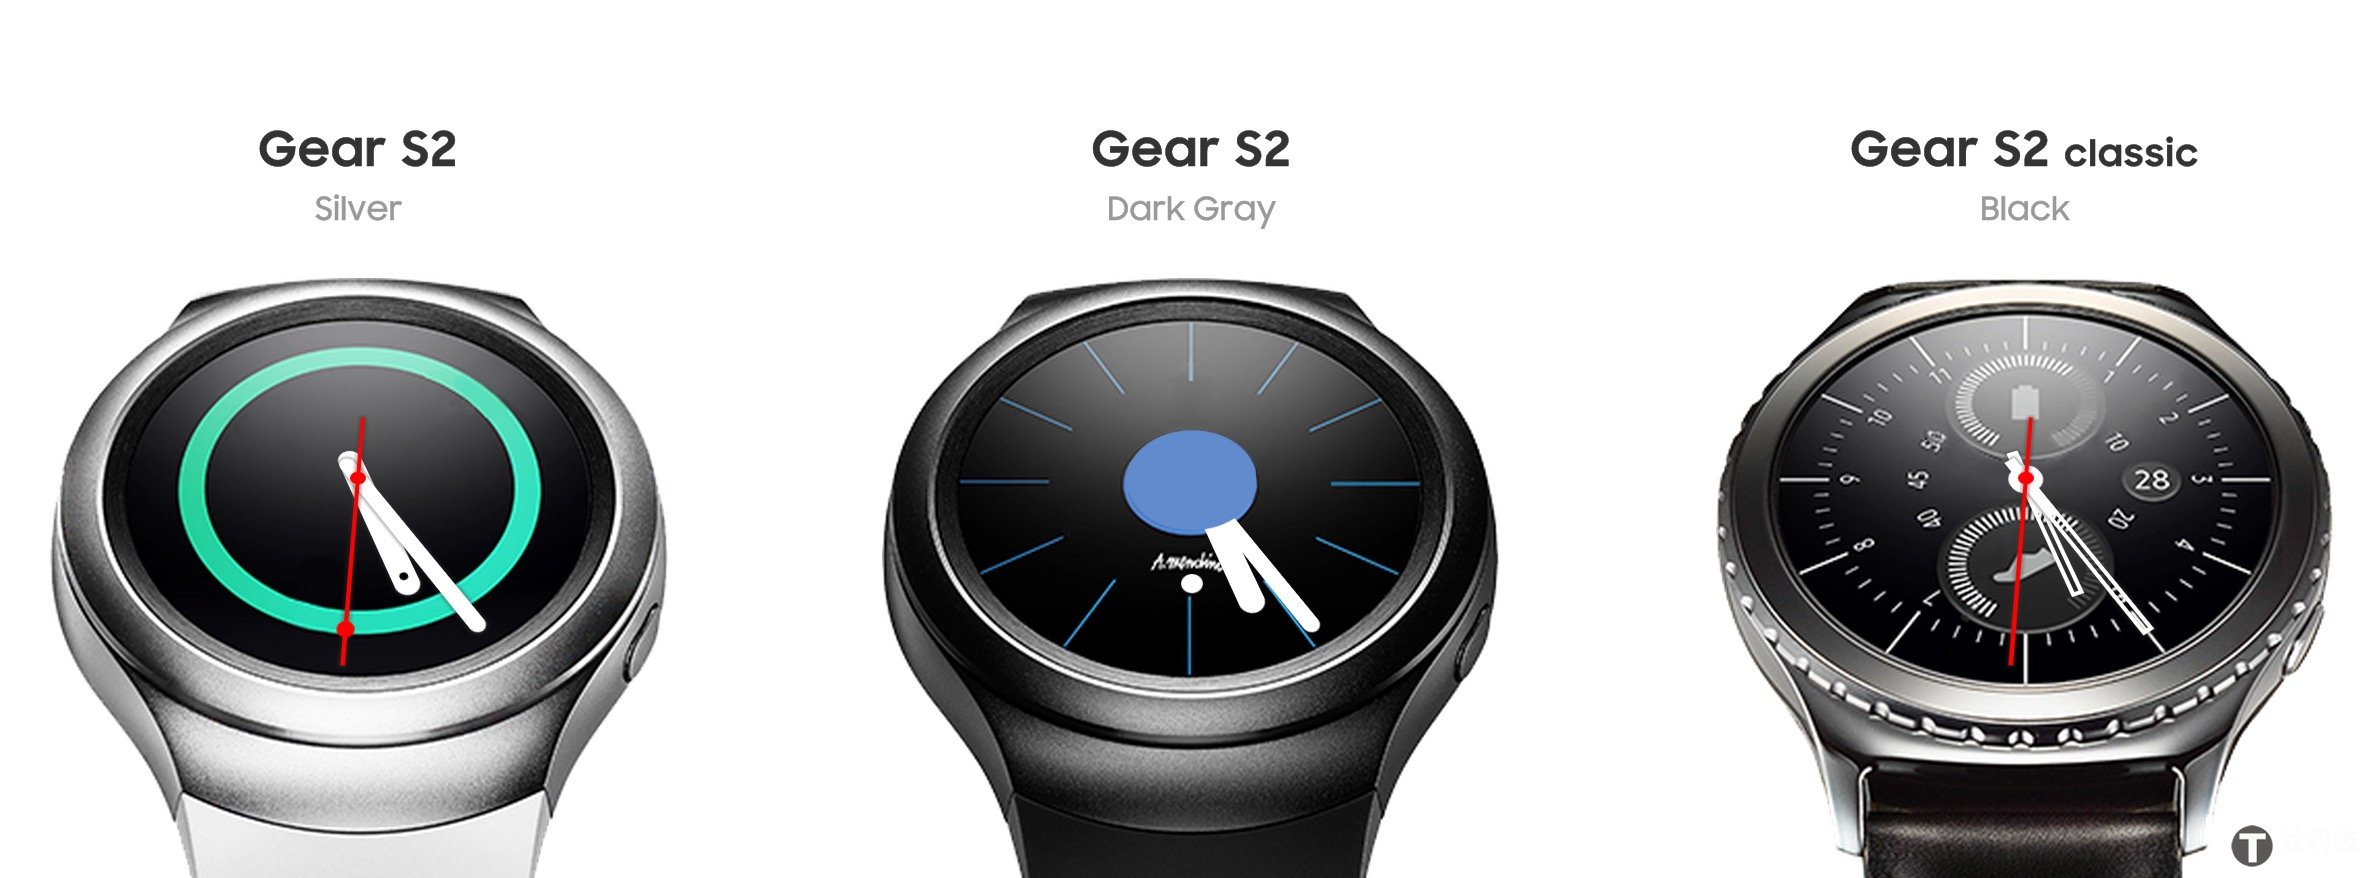 三星Gear S2智能手表体验评测 安卓平台中的Apple watch